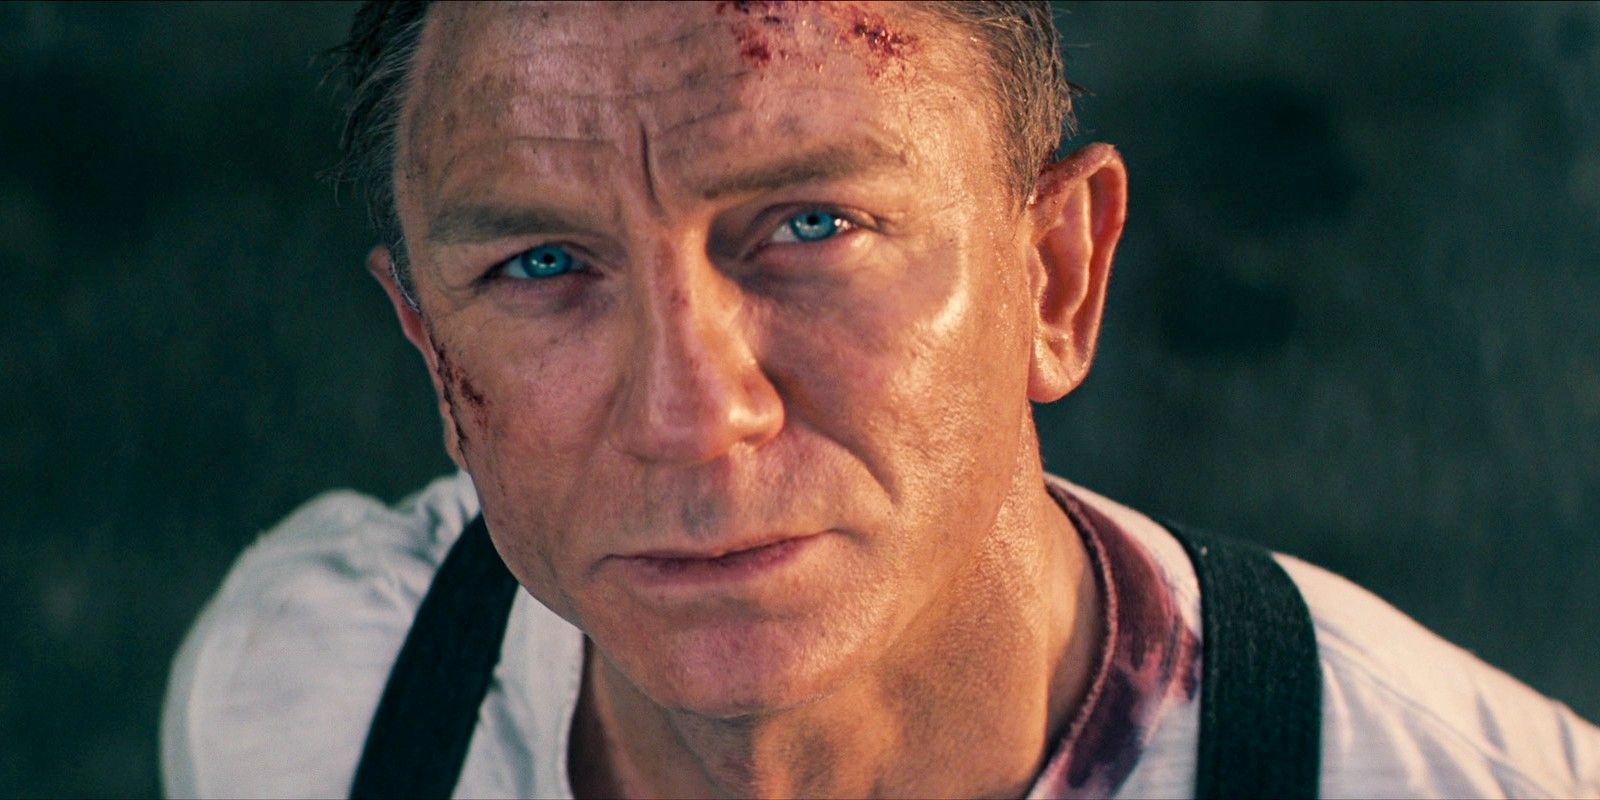 Las películas de James Bond no deberían ir directamente a la transmisión, dice Daniel Craig